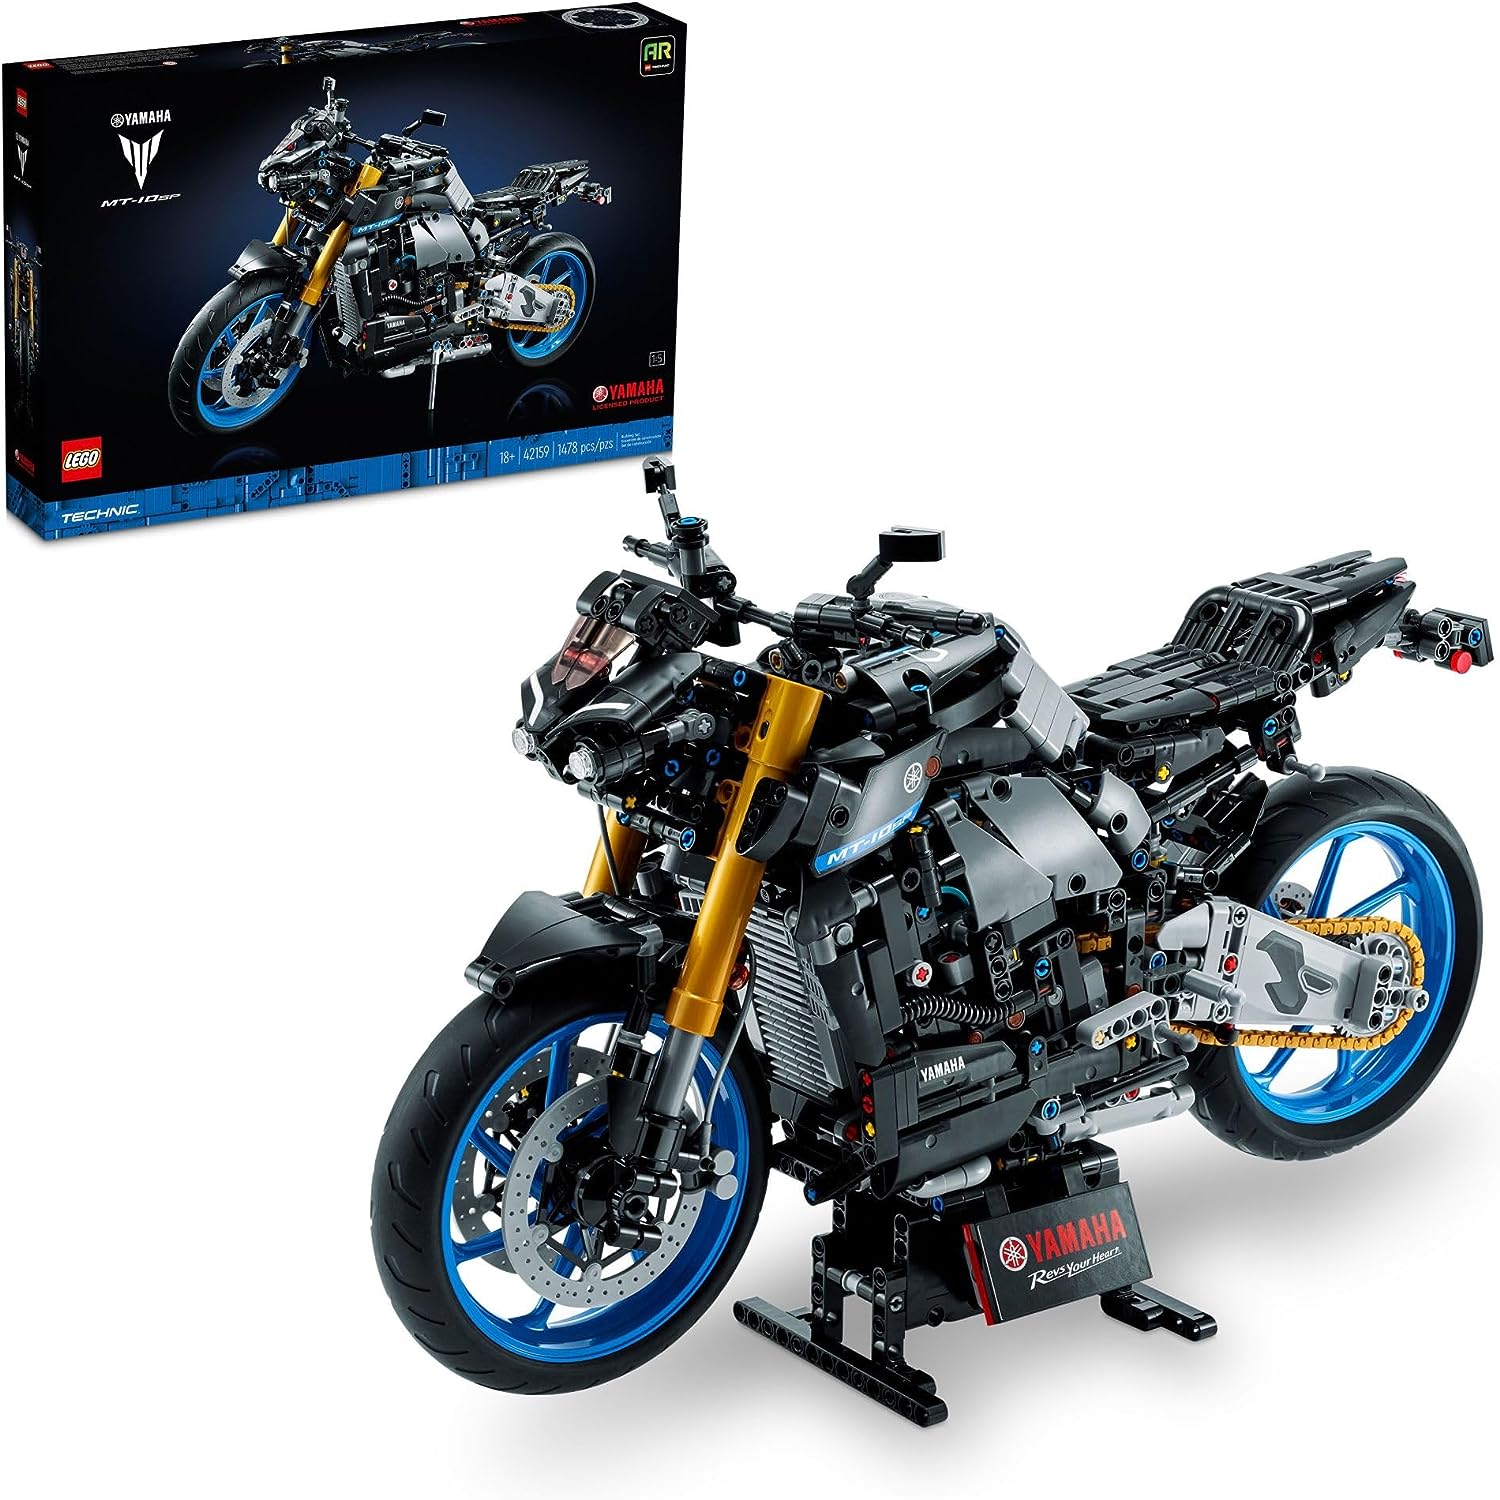 مجموعة البناء المتقدمة للبالغين من LEGO Technic Yamaha MT-10 SP 42159، نموذج الدراجة النارية الشهير هذا للبناء والعرض يمثل هدية رائعة لمحبي مركبات Yamaha أو مقتنيات الدراجات النارية